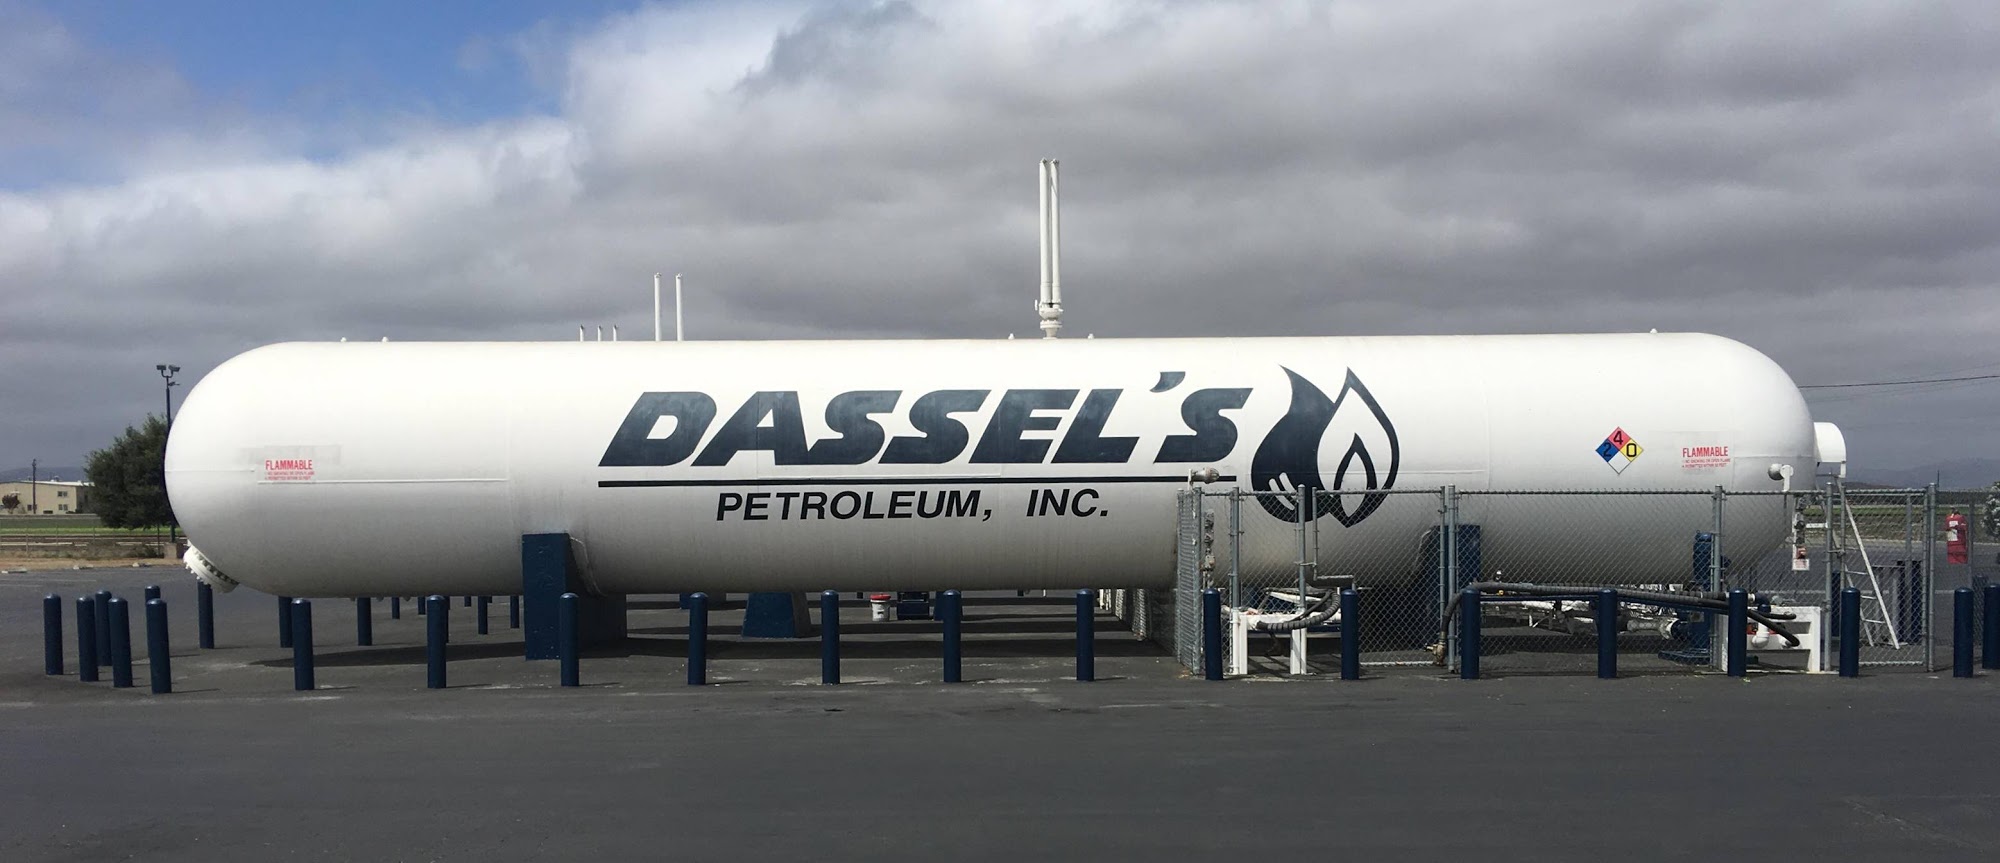 Dassel's Petroleum Inc